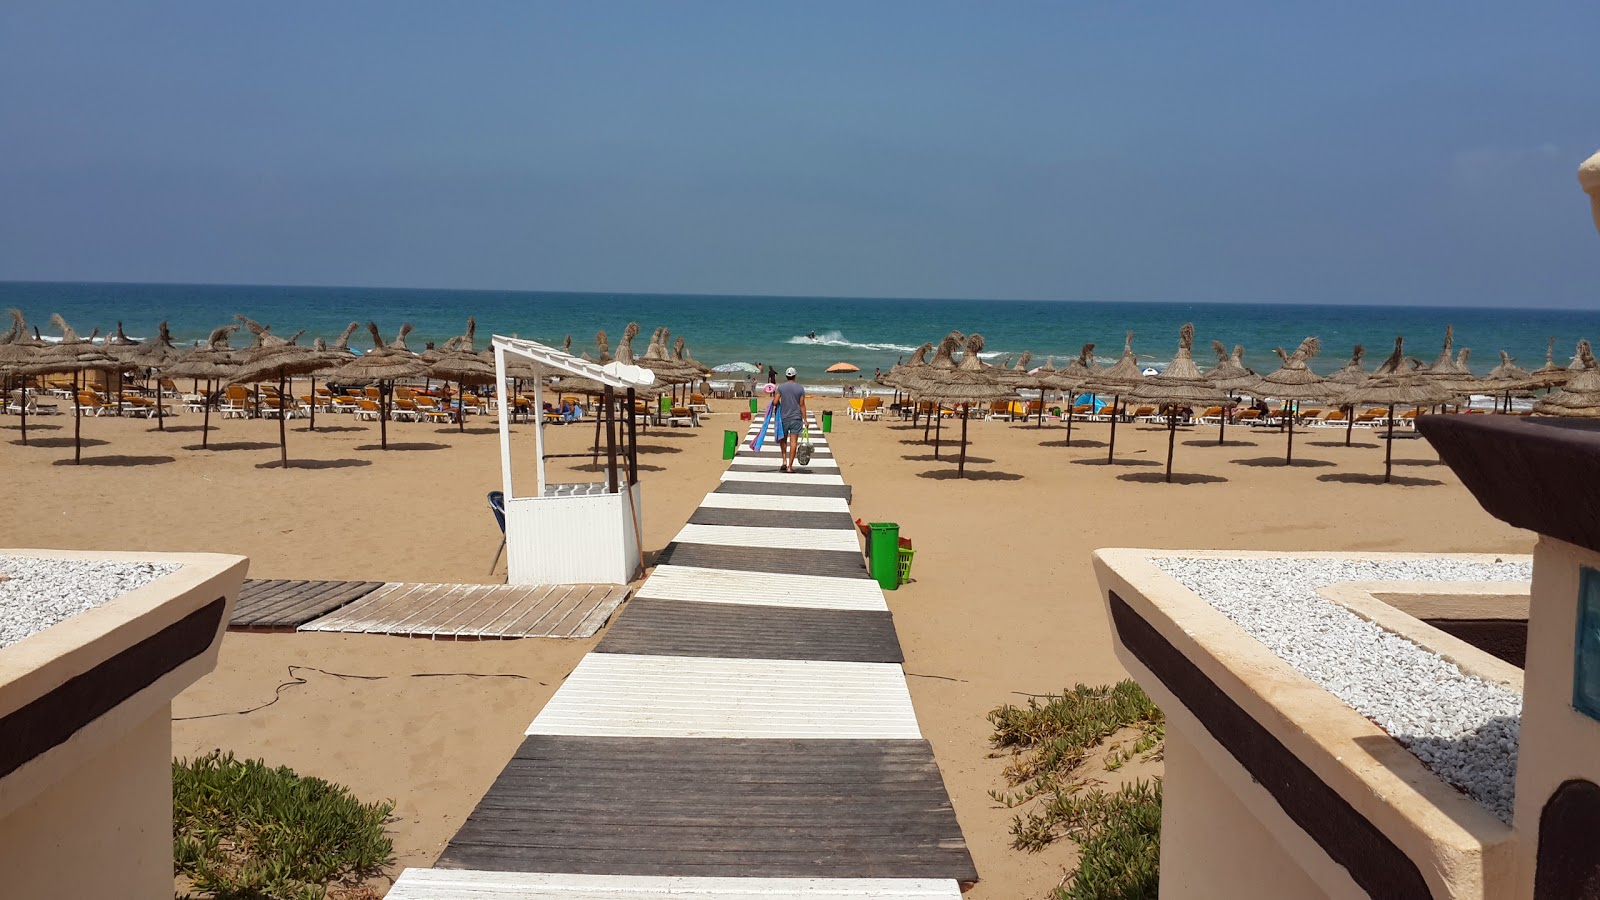 Saidia beach'in fotoğrafı - Çocuklu aile gezginleri için önerilir